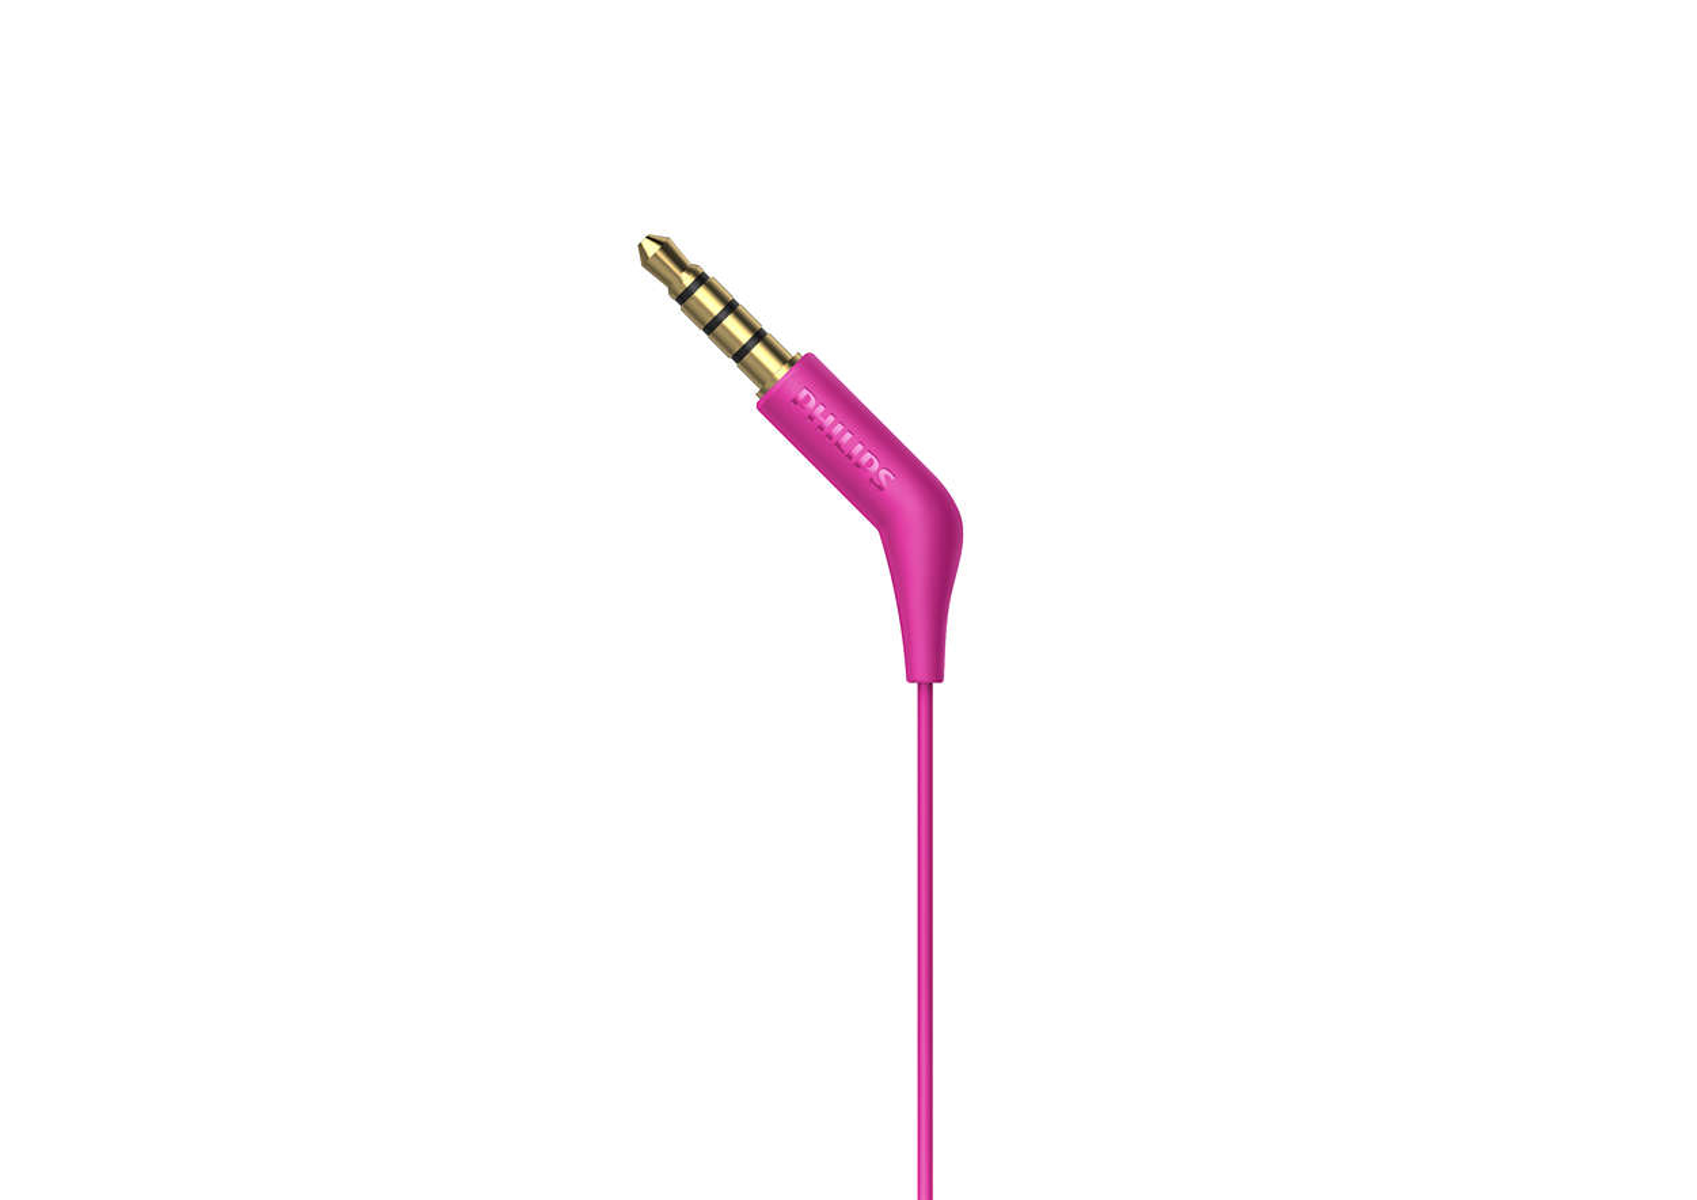 PHILIPS Kopfhörer In-ear Pink E1105PK/00,